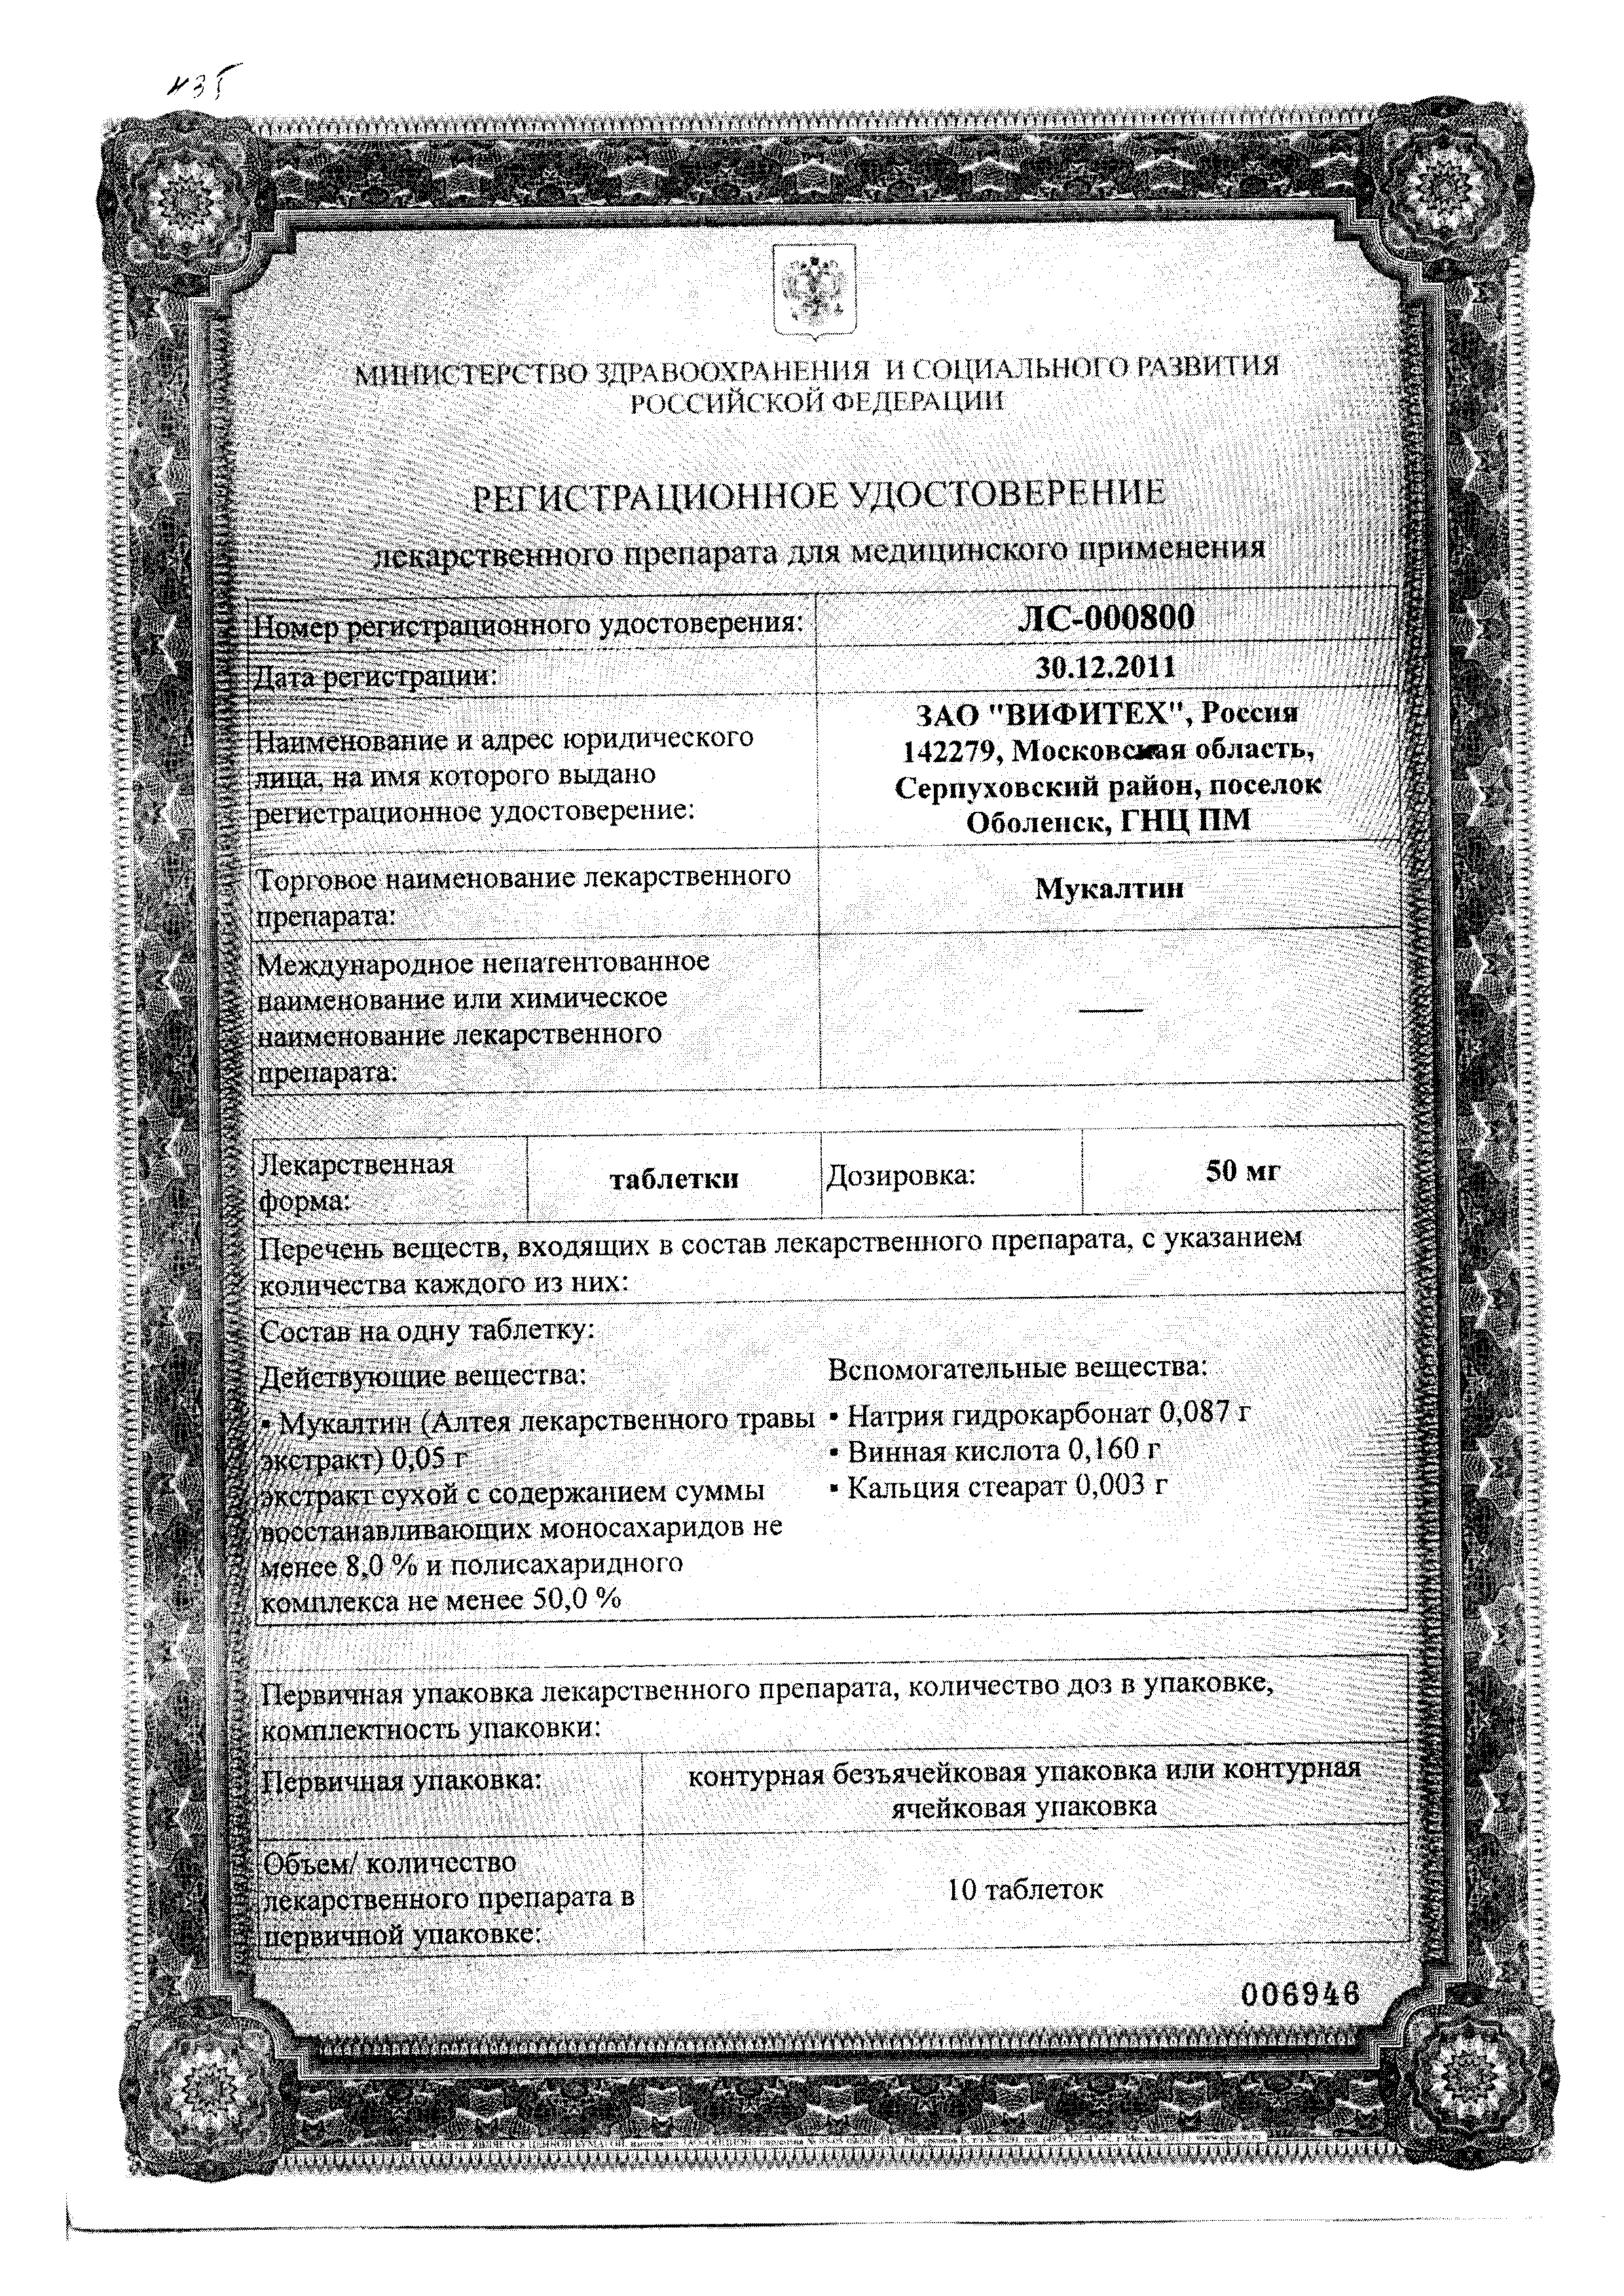 Мукалтин сертификат